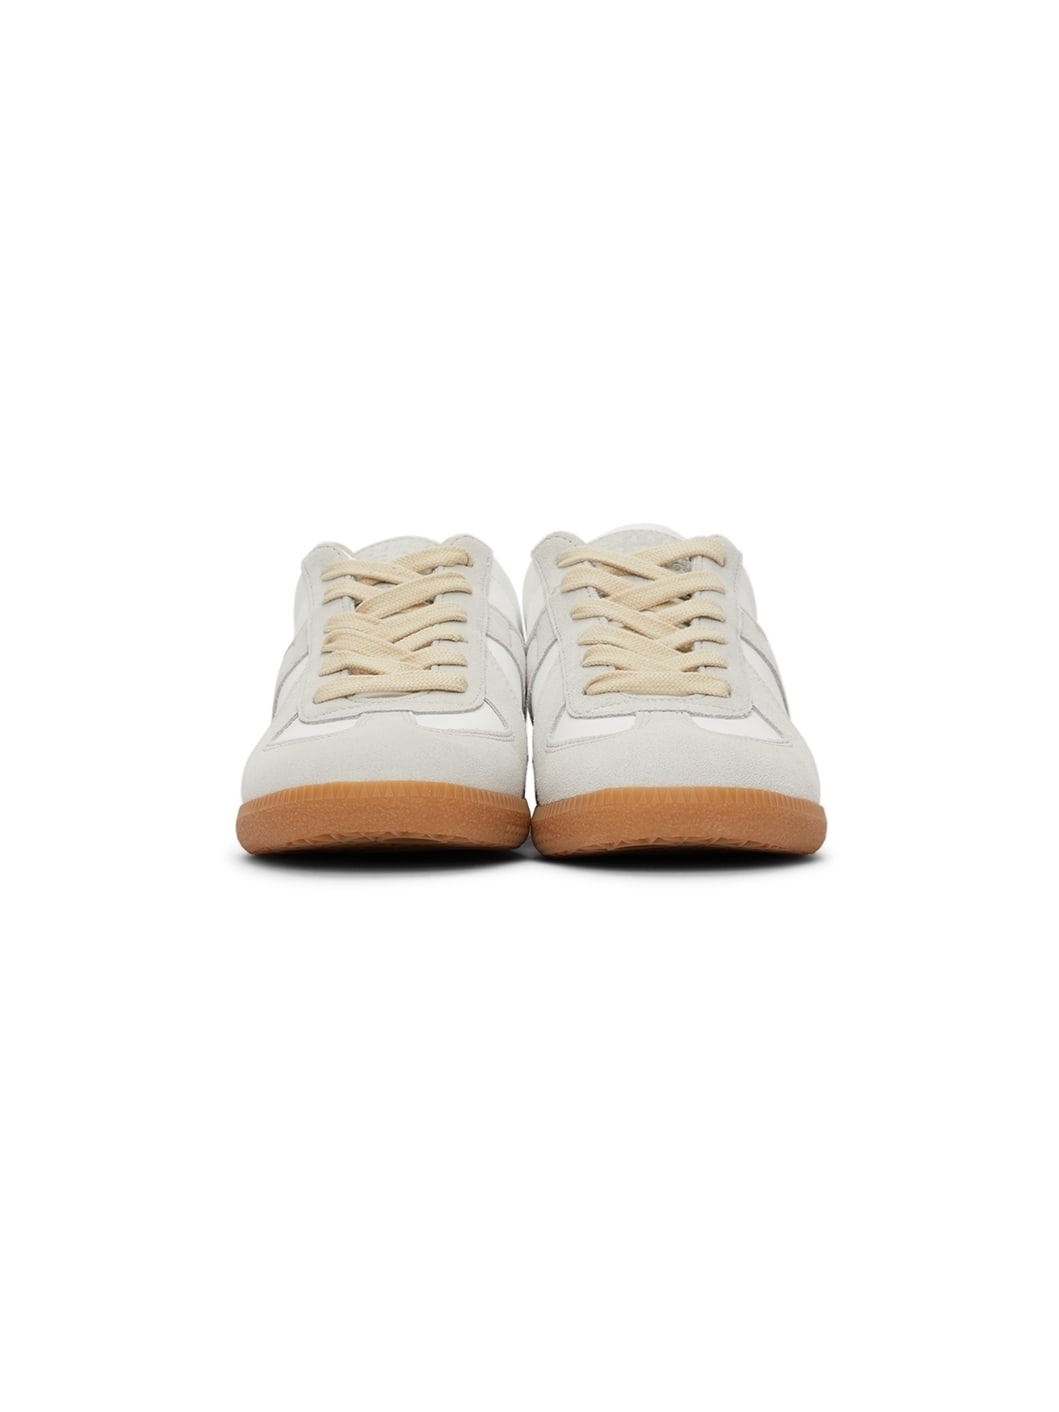 White & Grey Replica Sneakers - 2